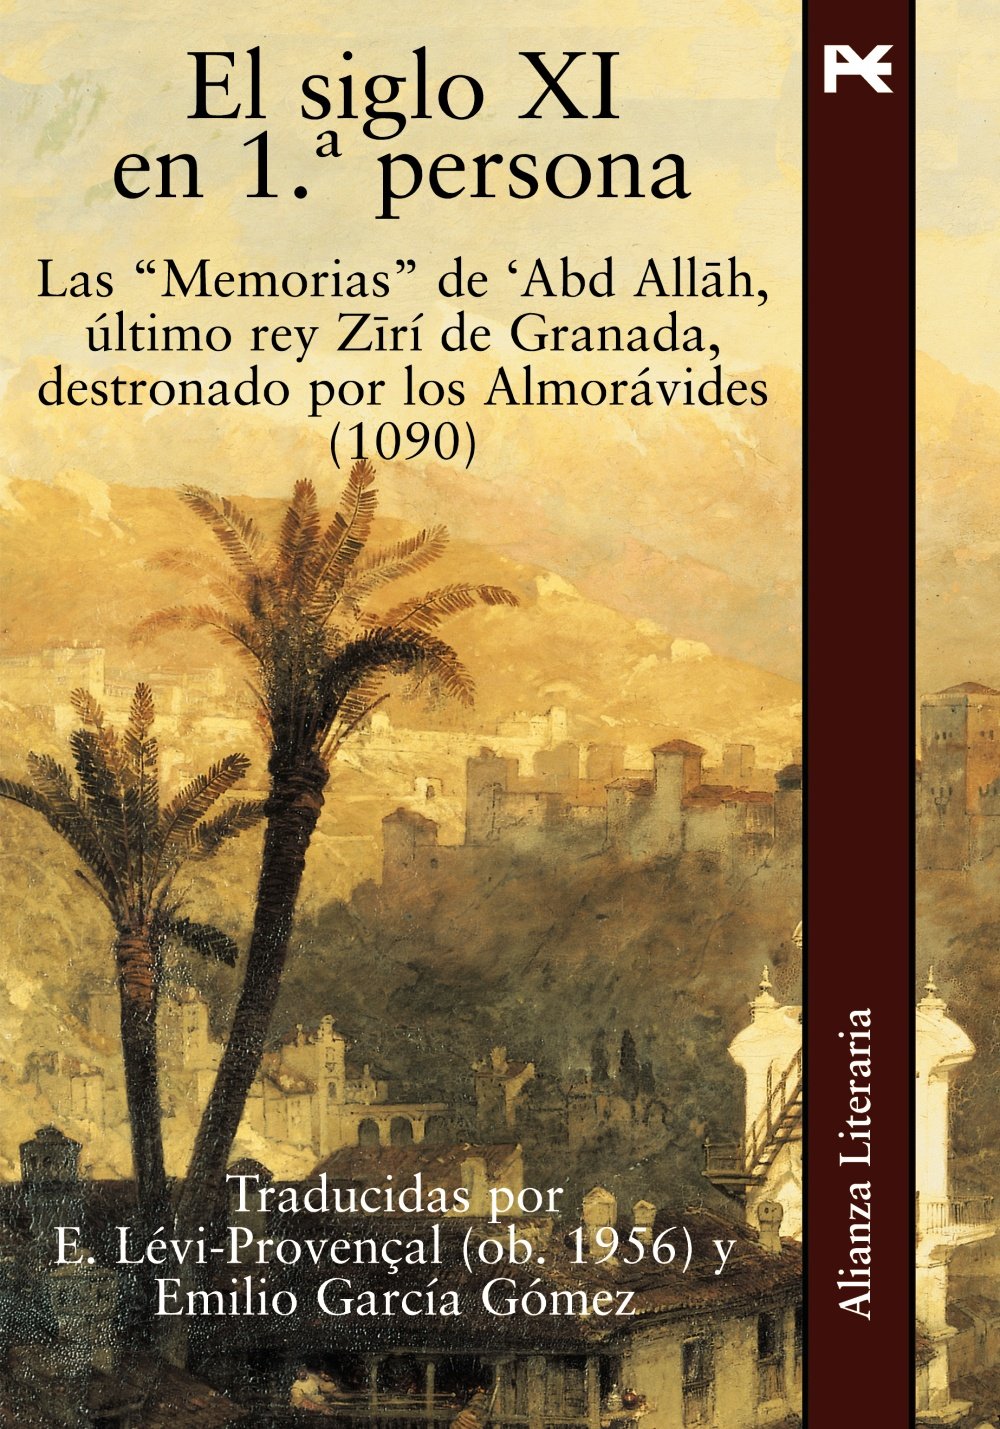 El siglo XI en 1ª persona. Las Memorias de 'Abd Allah, último rey Zirí de Granada destronado por los Almorávides (1090) Book Cover